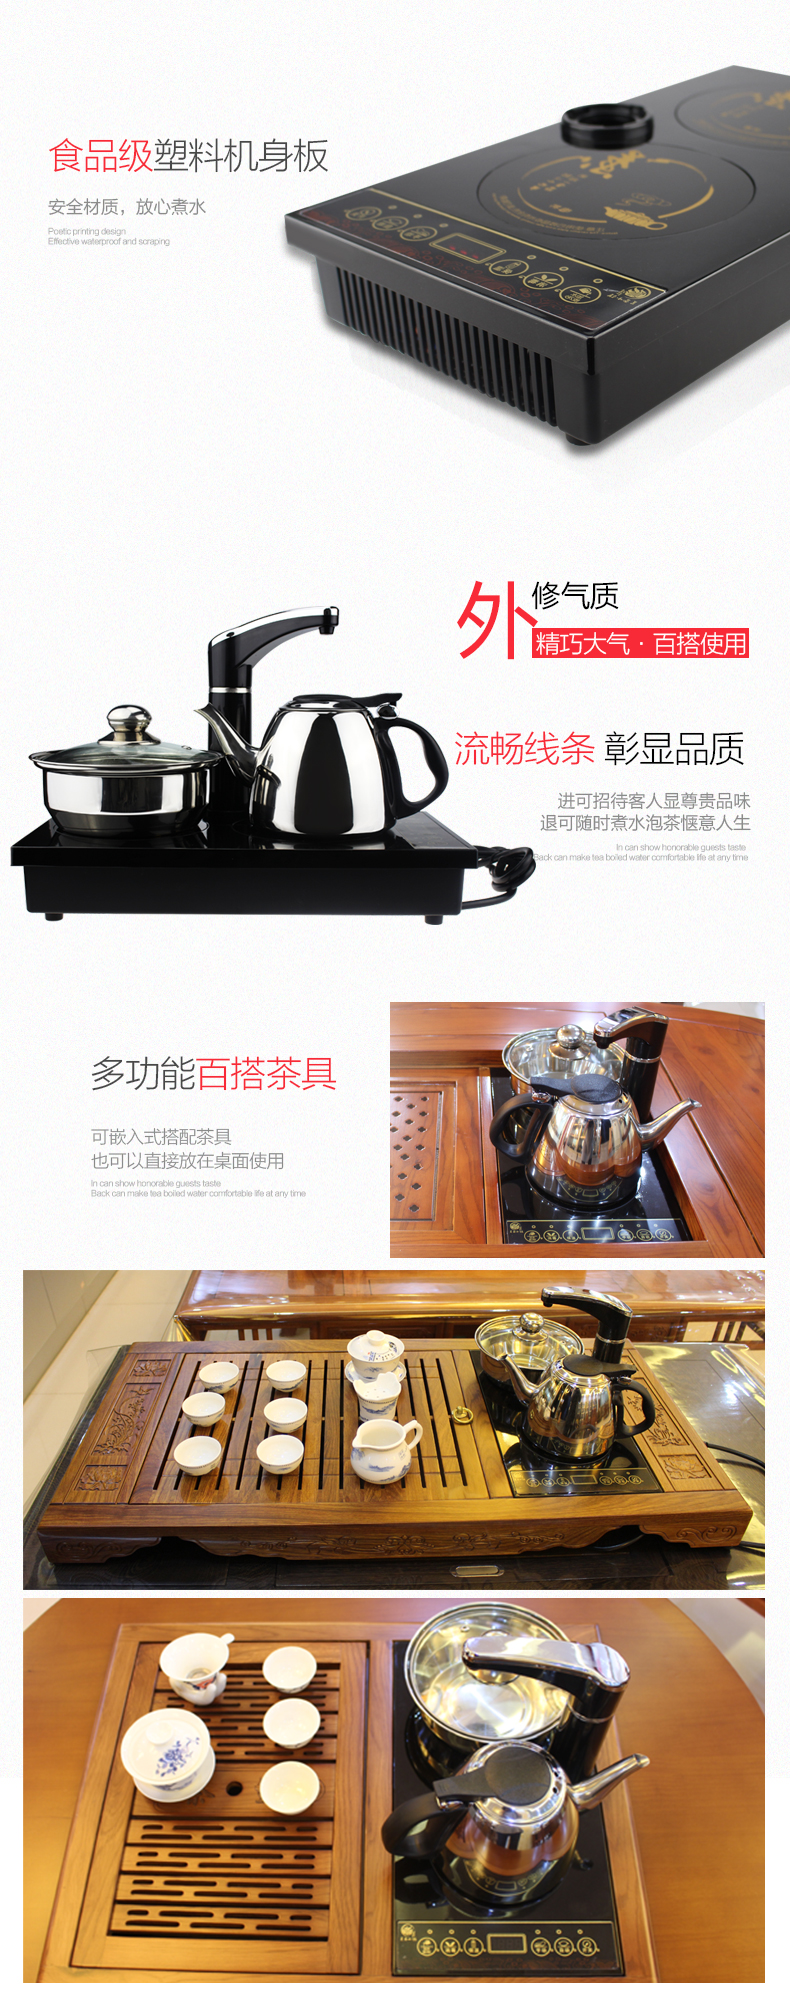 茗茶小镇DC1411电磁茶炉自动上水茶具套装烧水壶加水抽水器三合一